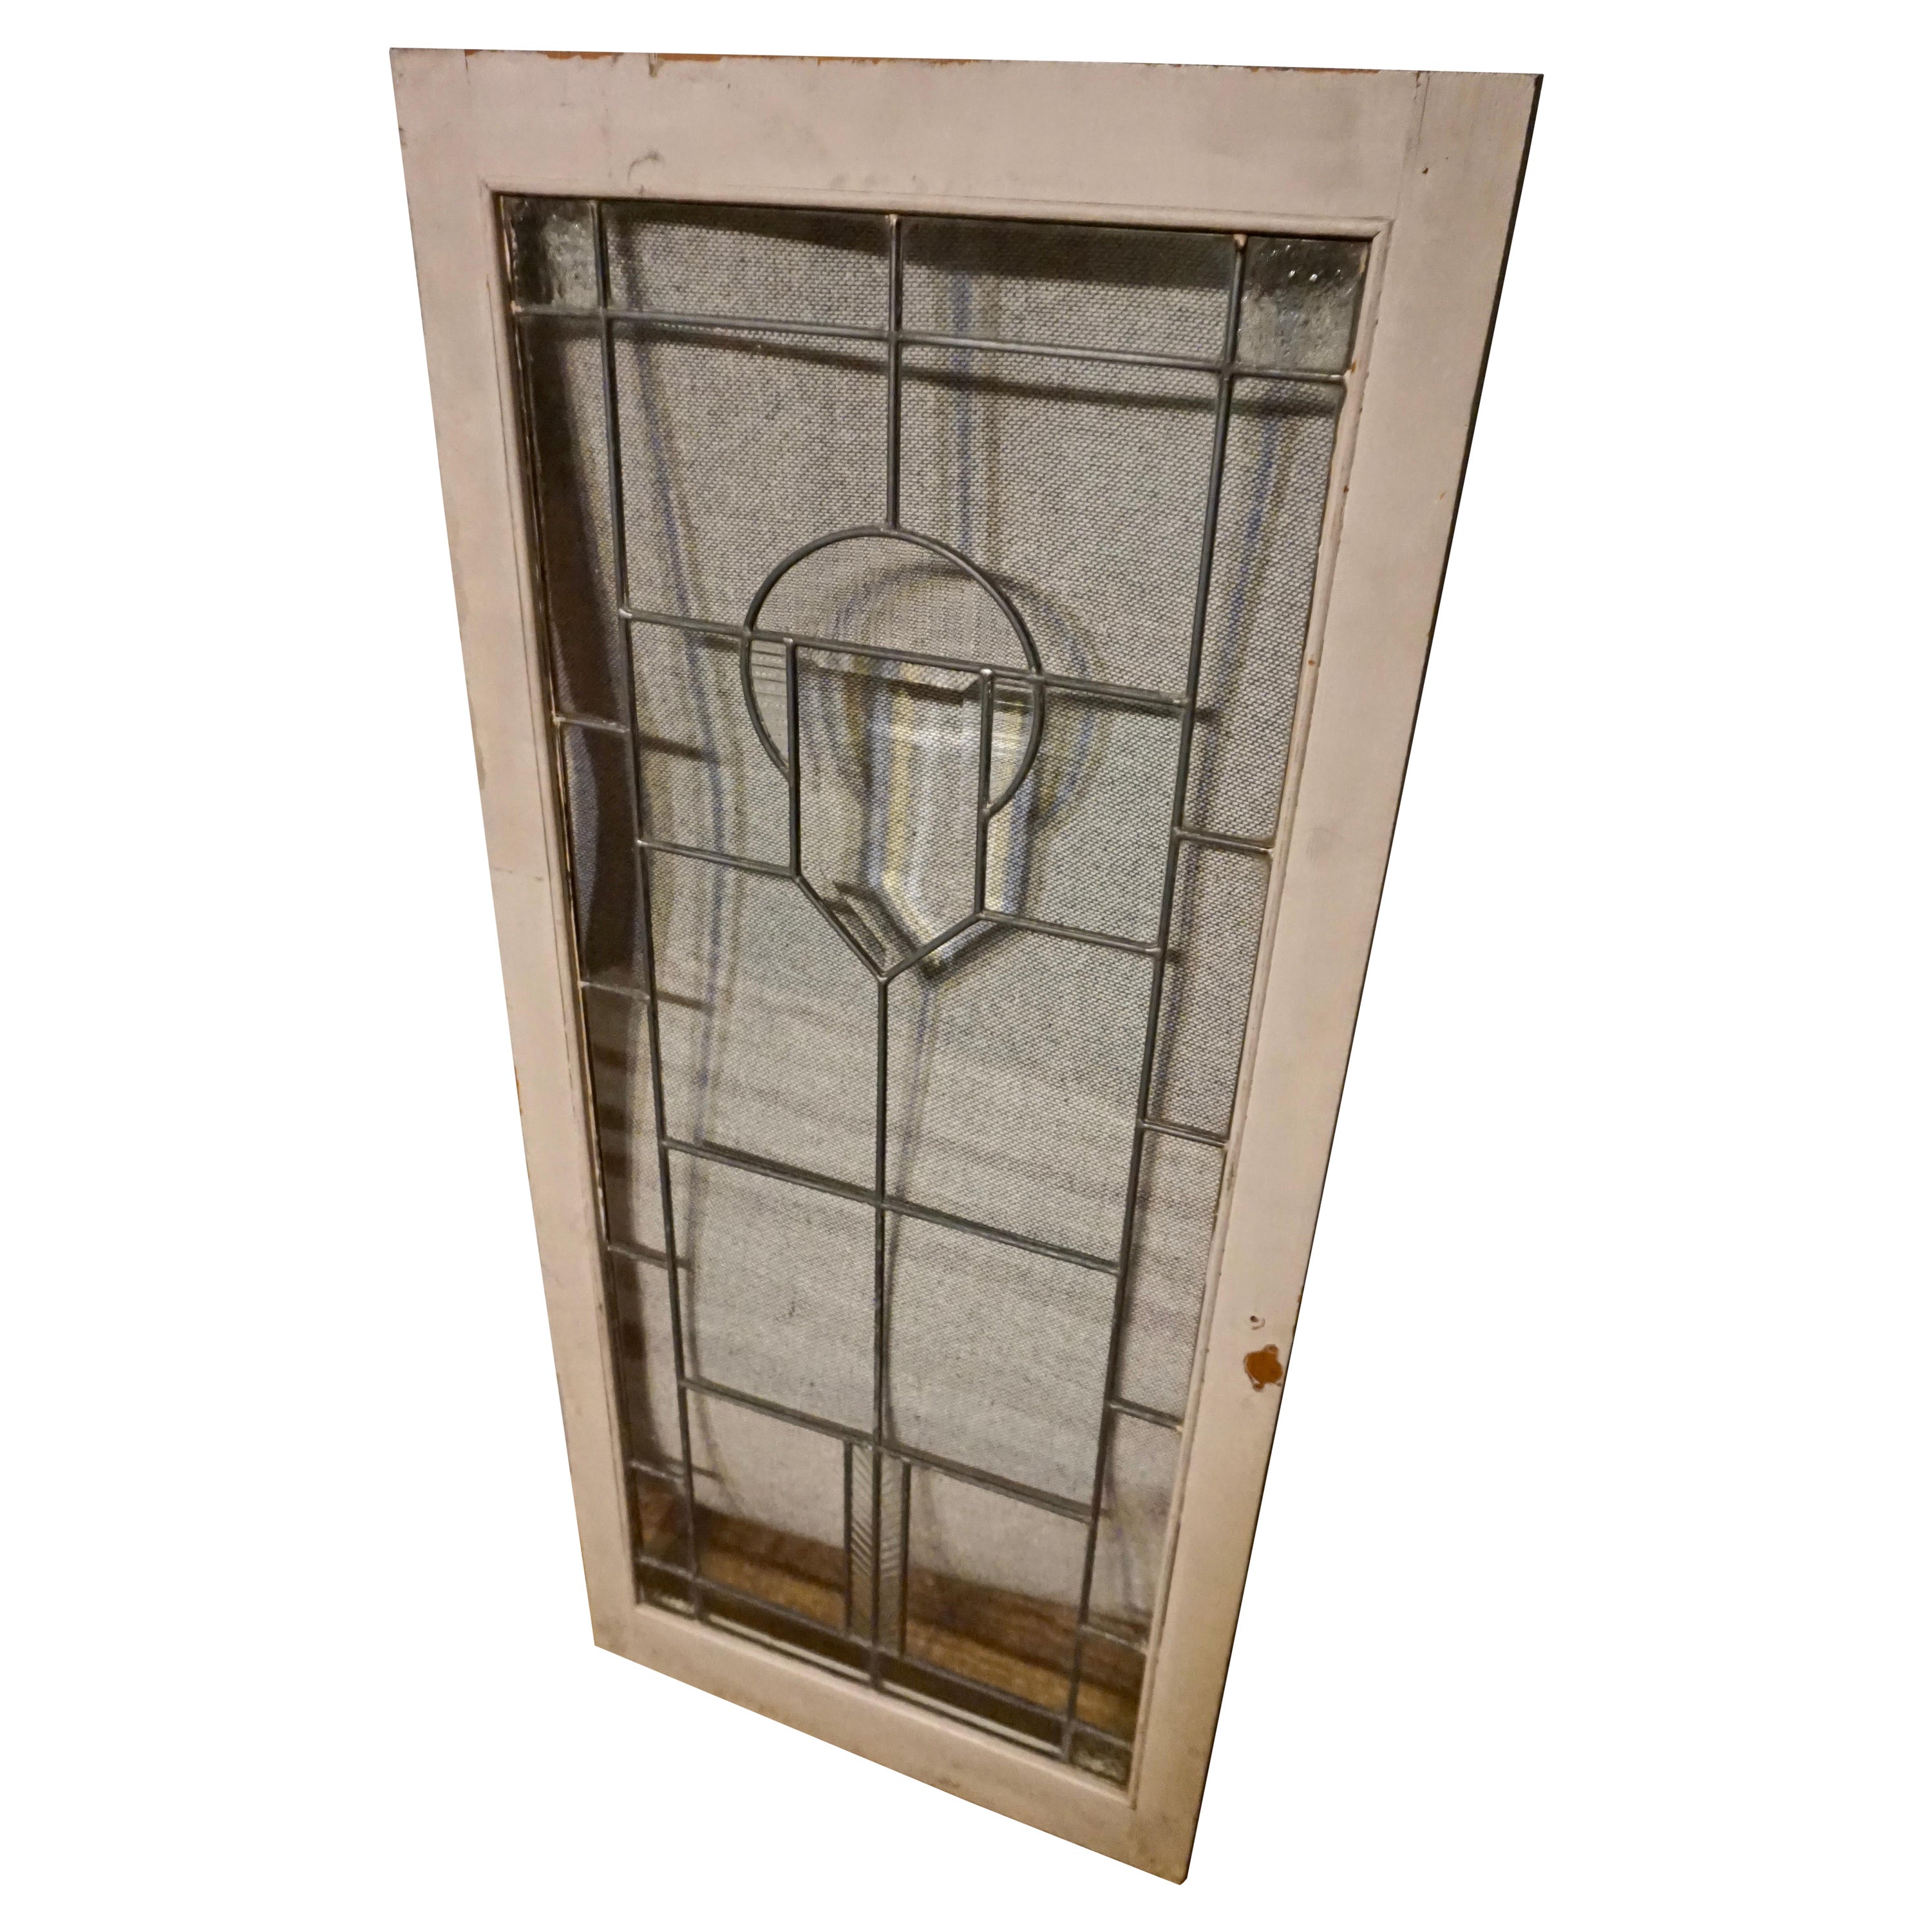 Early Art Deco Lead Bevel Glass Window in Frame